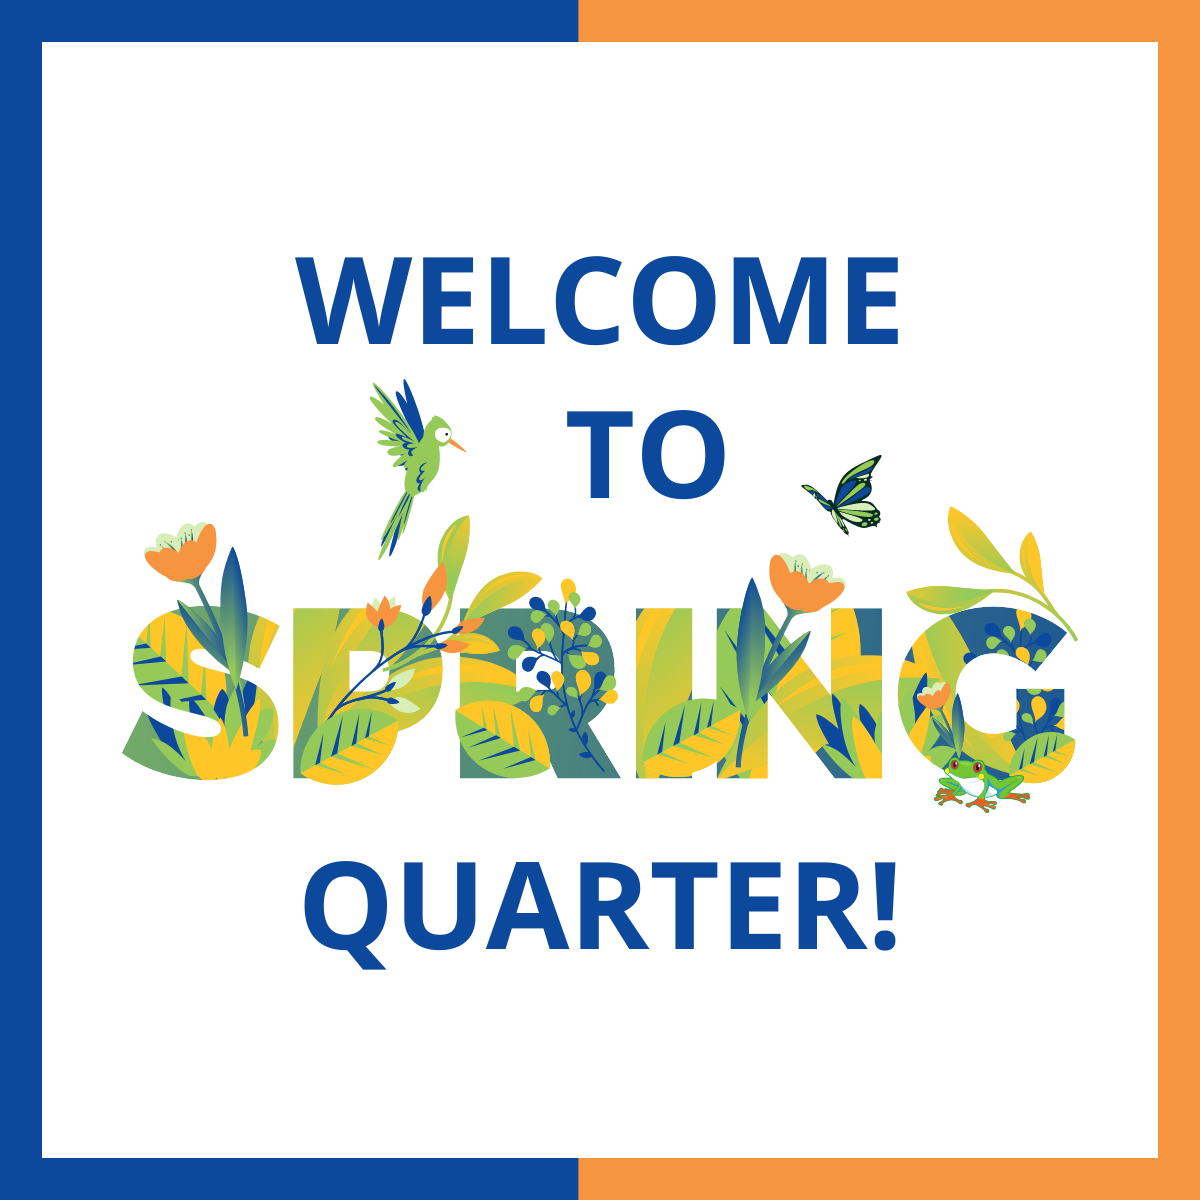 Continuing Education to Spring Quarter!